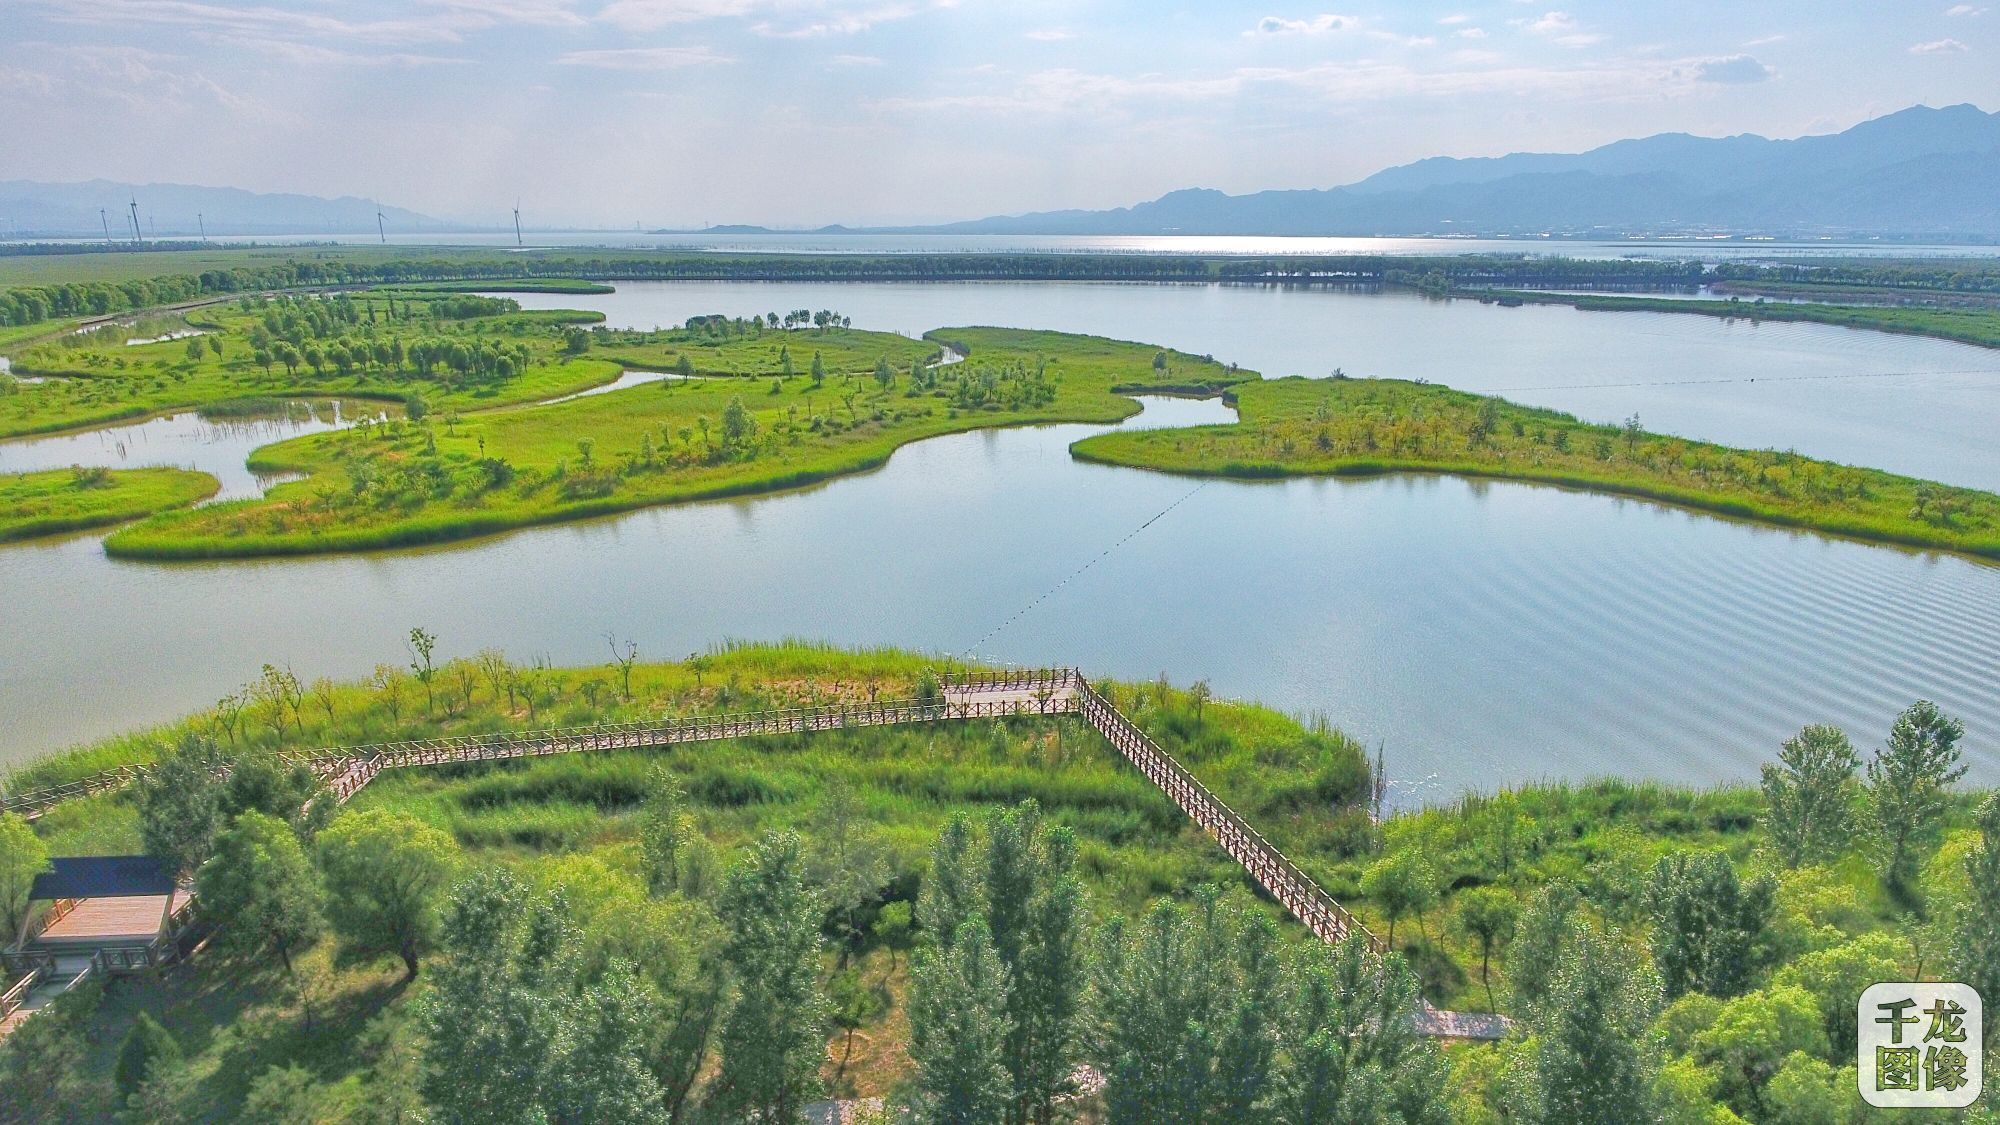 北京野鸭湖湿地跻身《国际重要湿地名录》  湿地保护与利用获国际认可